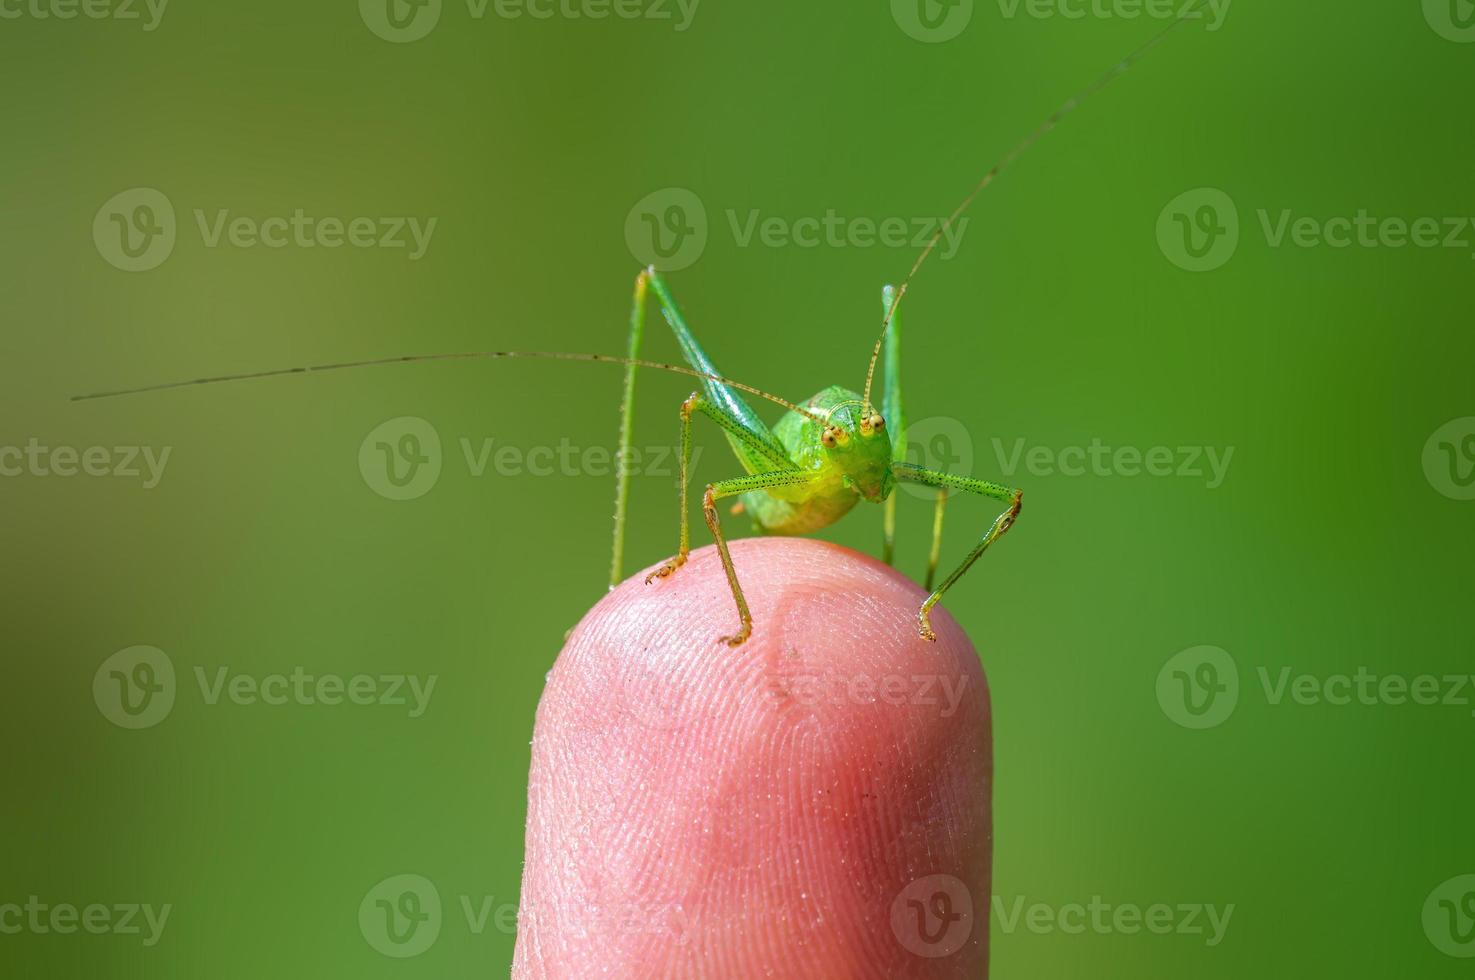 une sauterelle verte est assise sur un doigt et se réchauffe photo